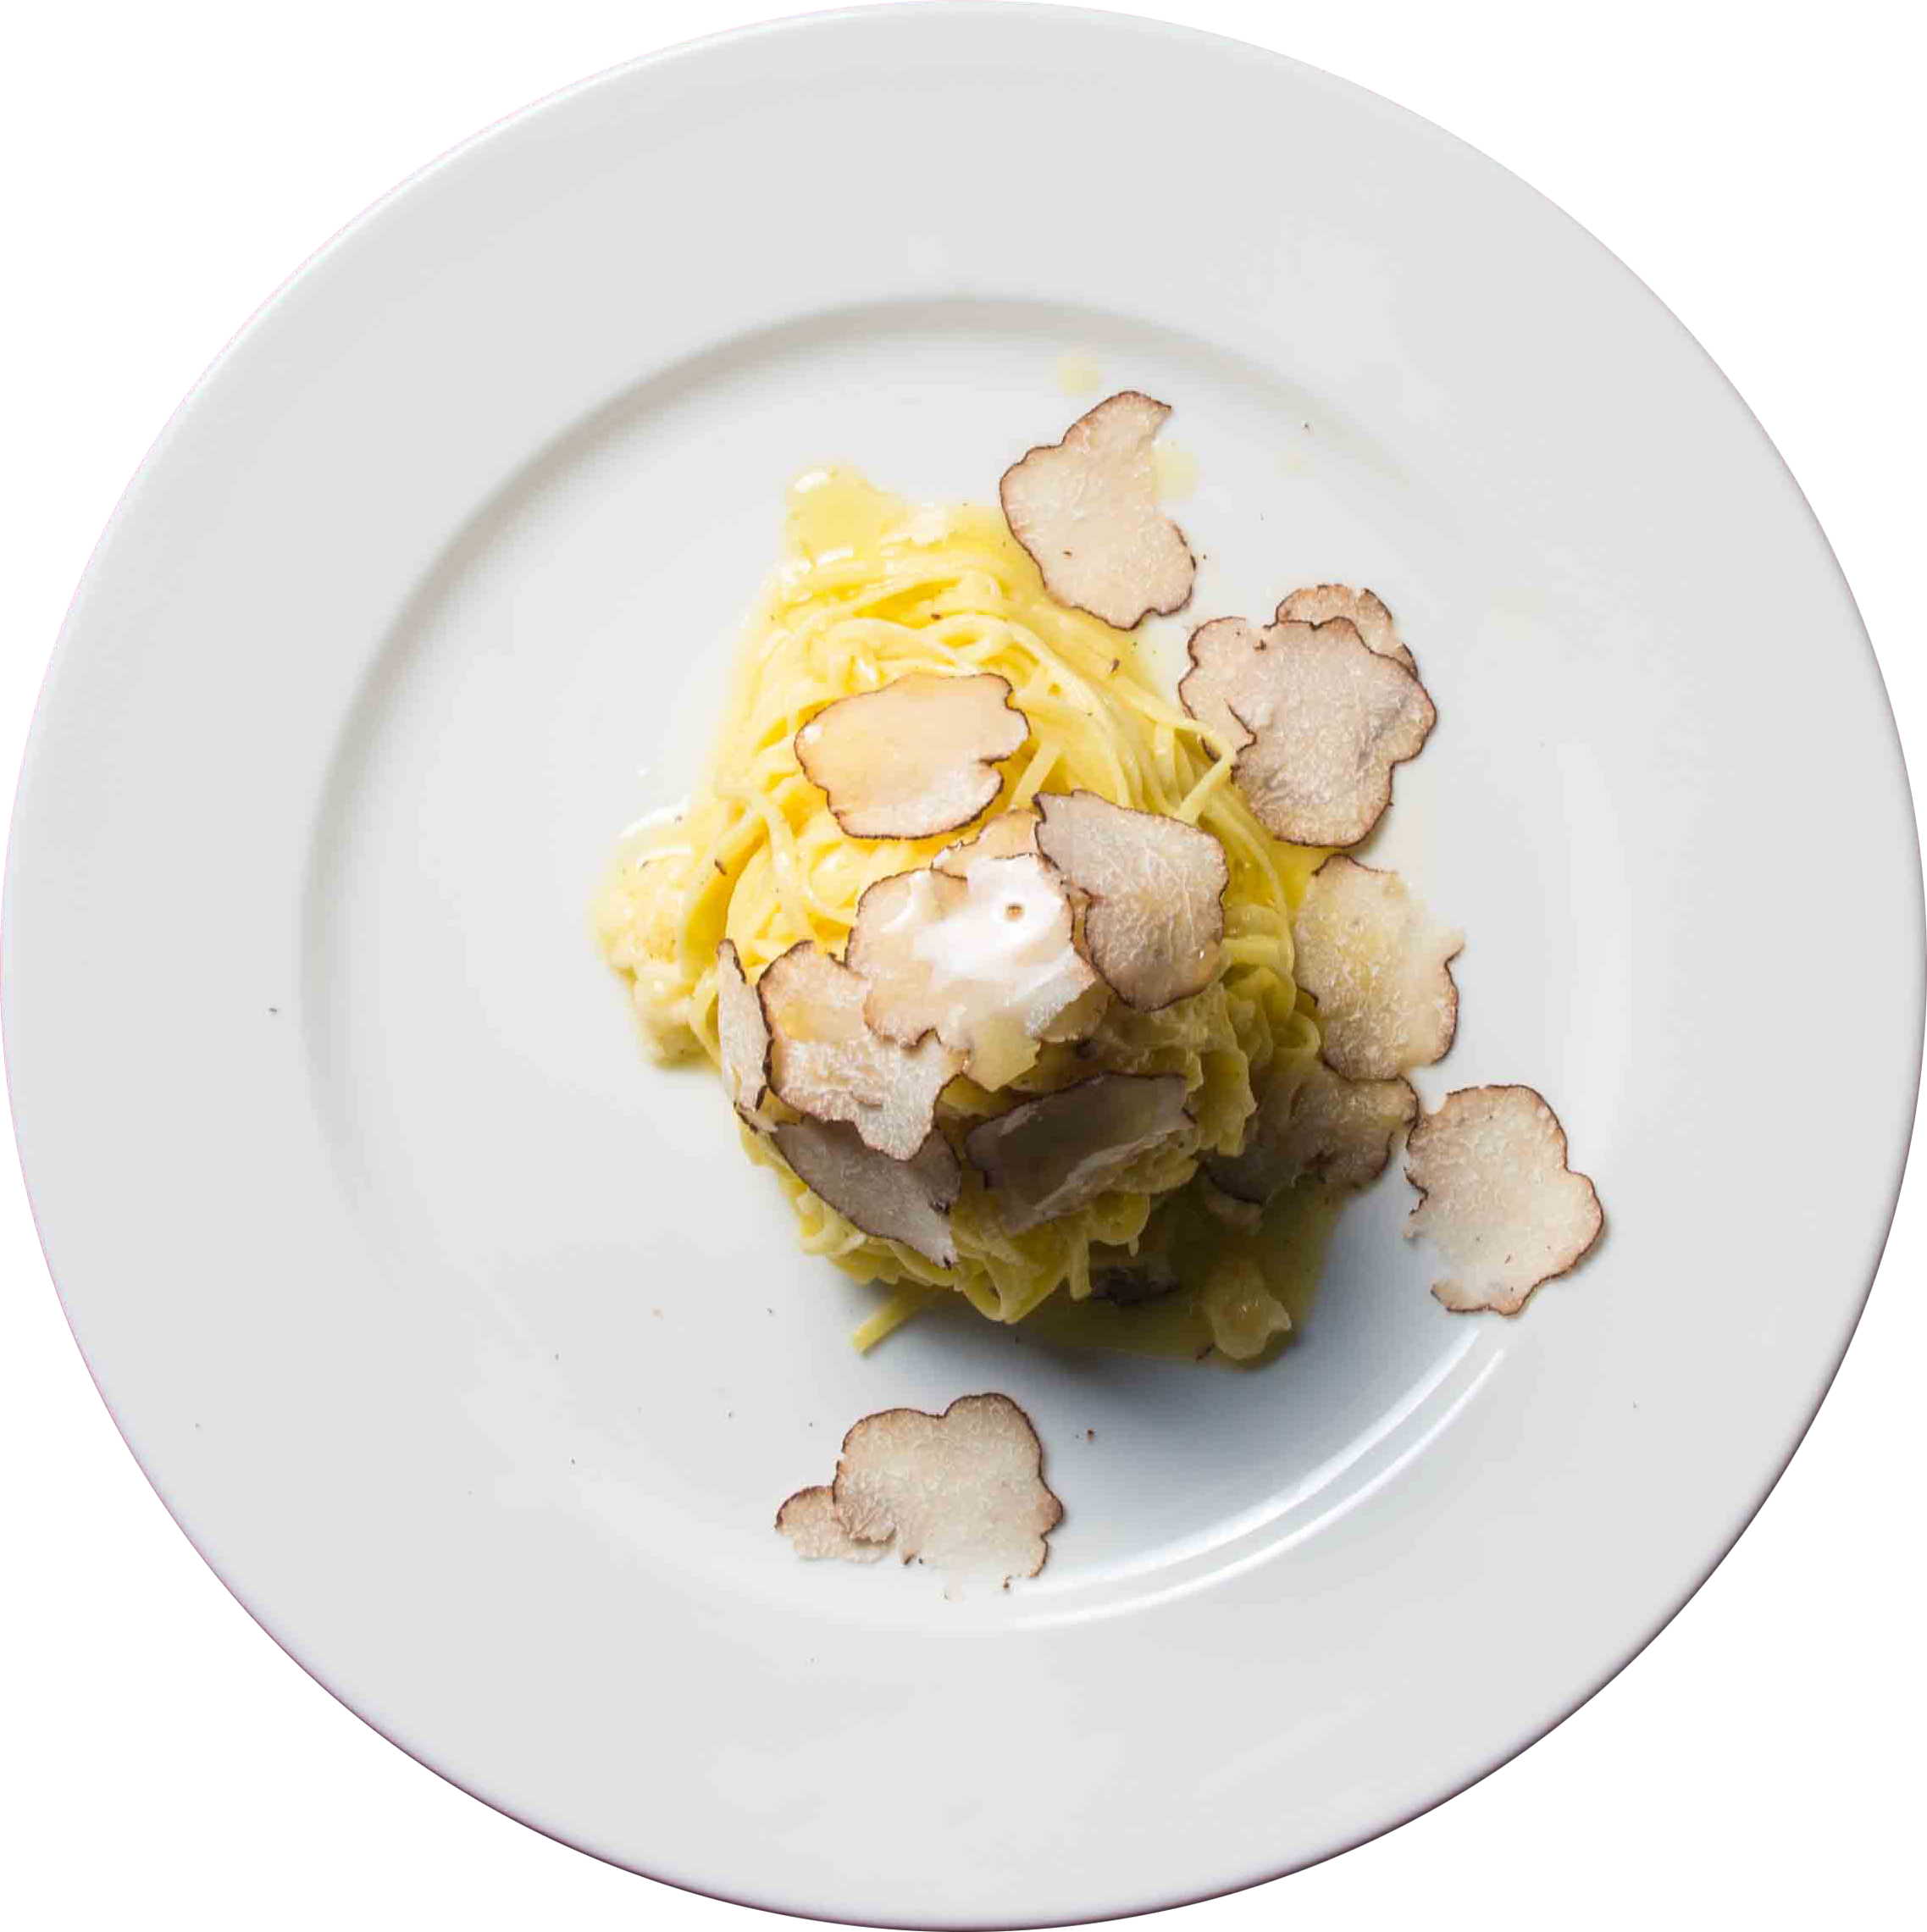 trattoria zucchero düsseldorf - tagliolini mit truffel in parmesanlaib